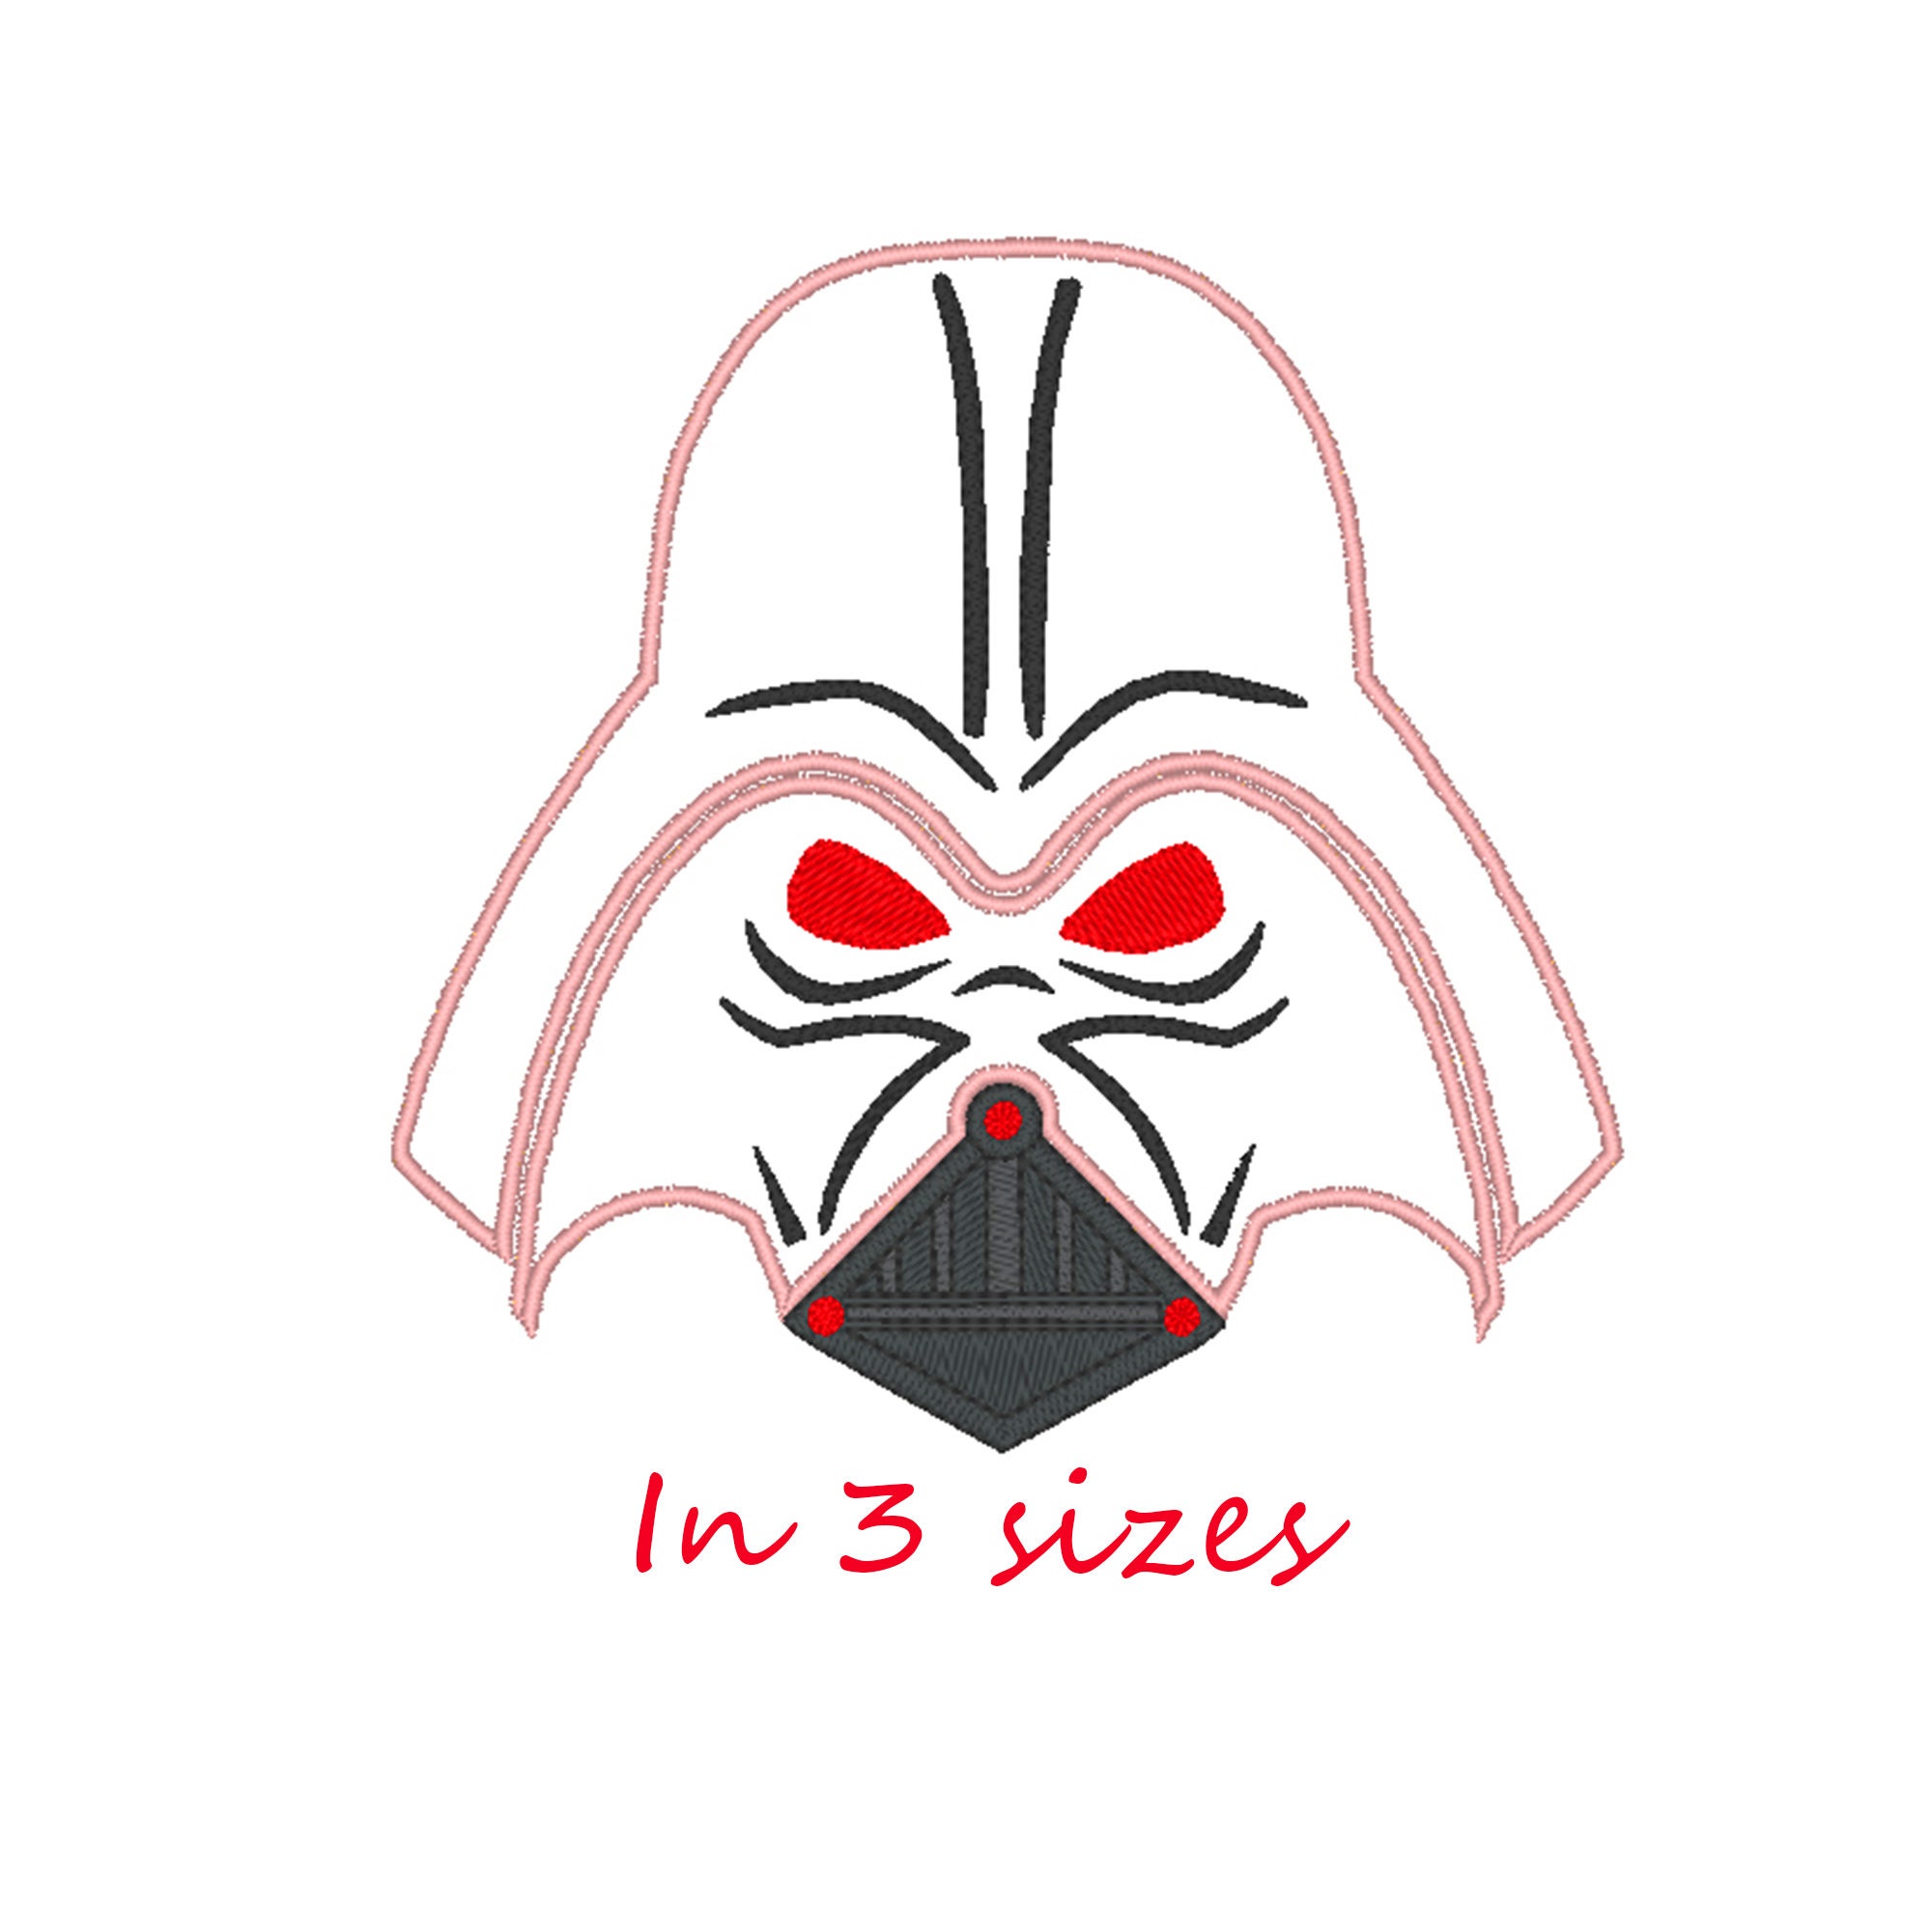 Darth Vader Star Wars Embroidery Design 10 File Formats 8 Sizes Digital File Instant Download